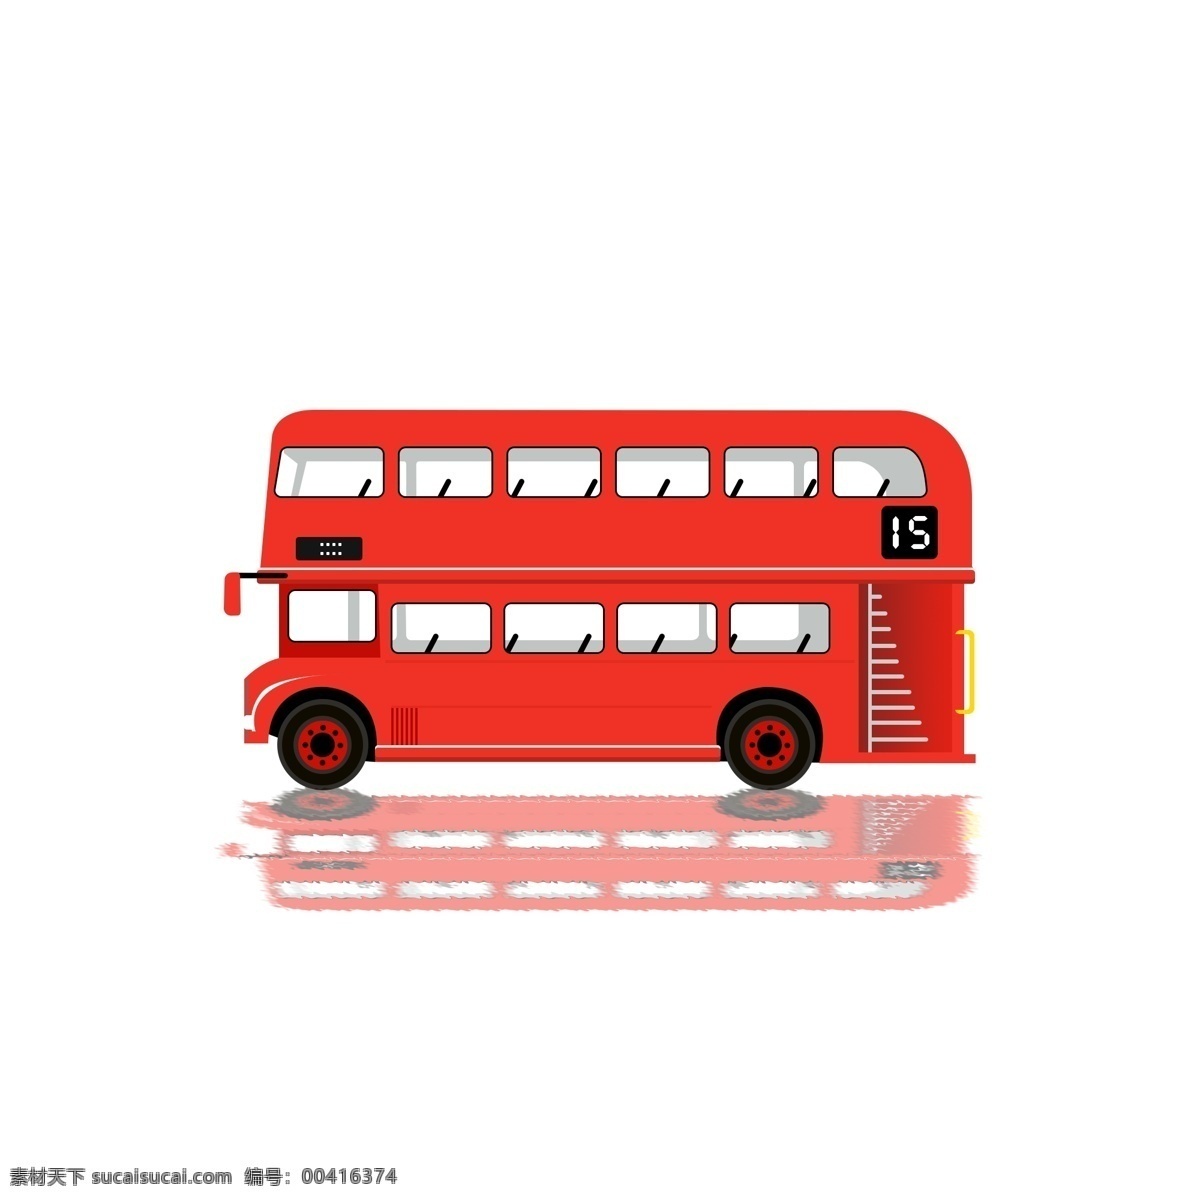 红色 双层 巴士 公交车 交通工具 商用 双层巴士